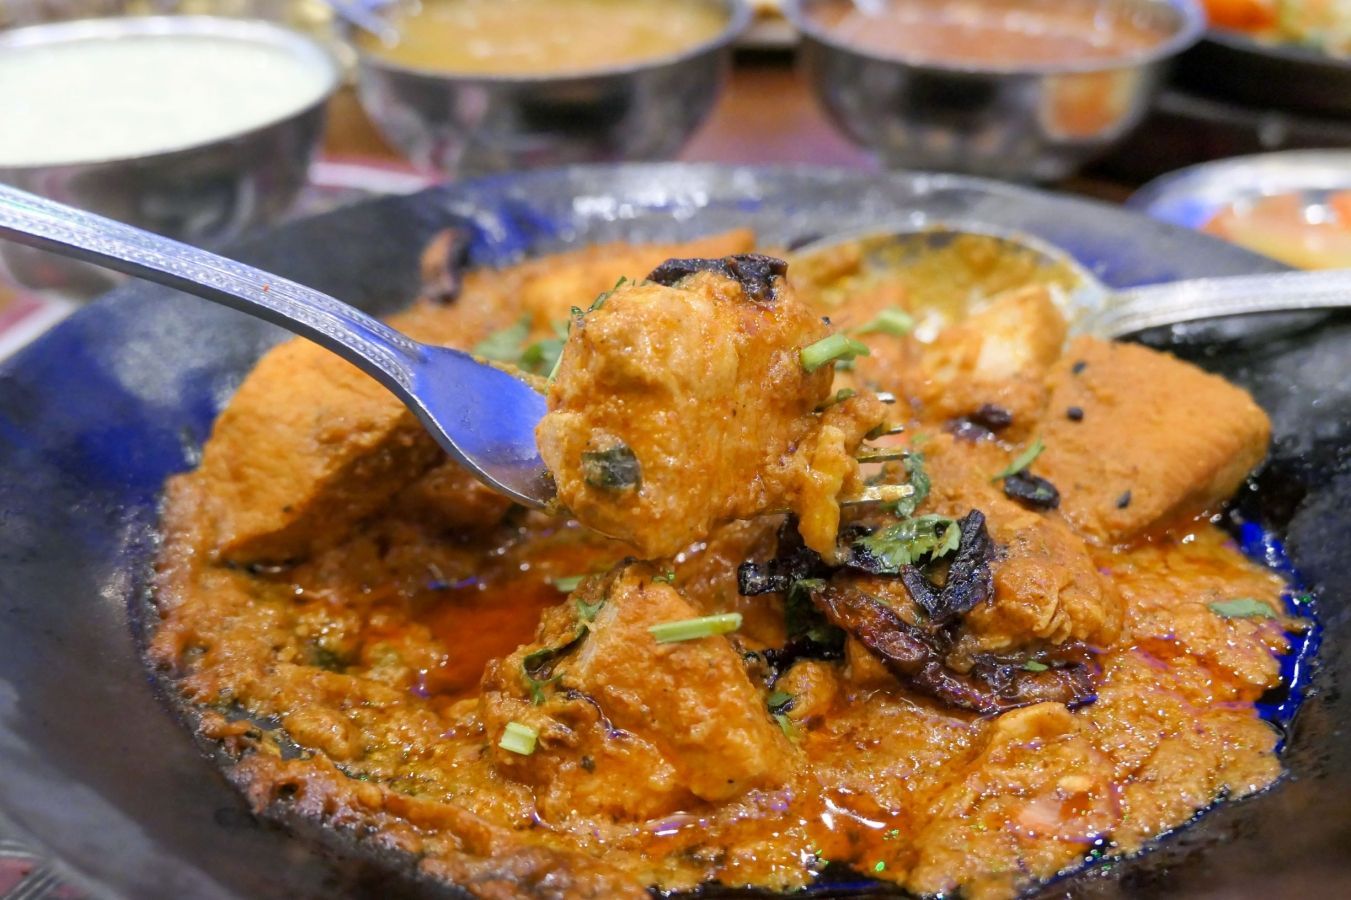 Aprovecha tu visita a Londres para disfrutar de lo mejor de la comida india, aprovechando la amplia y variada oferta de establecimientos que la preparan | Gastronomadistas.